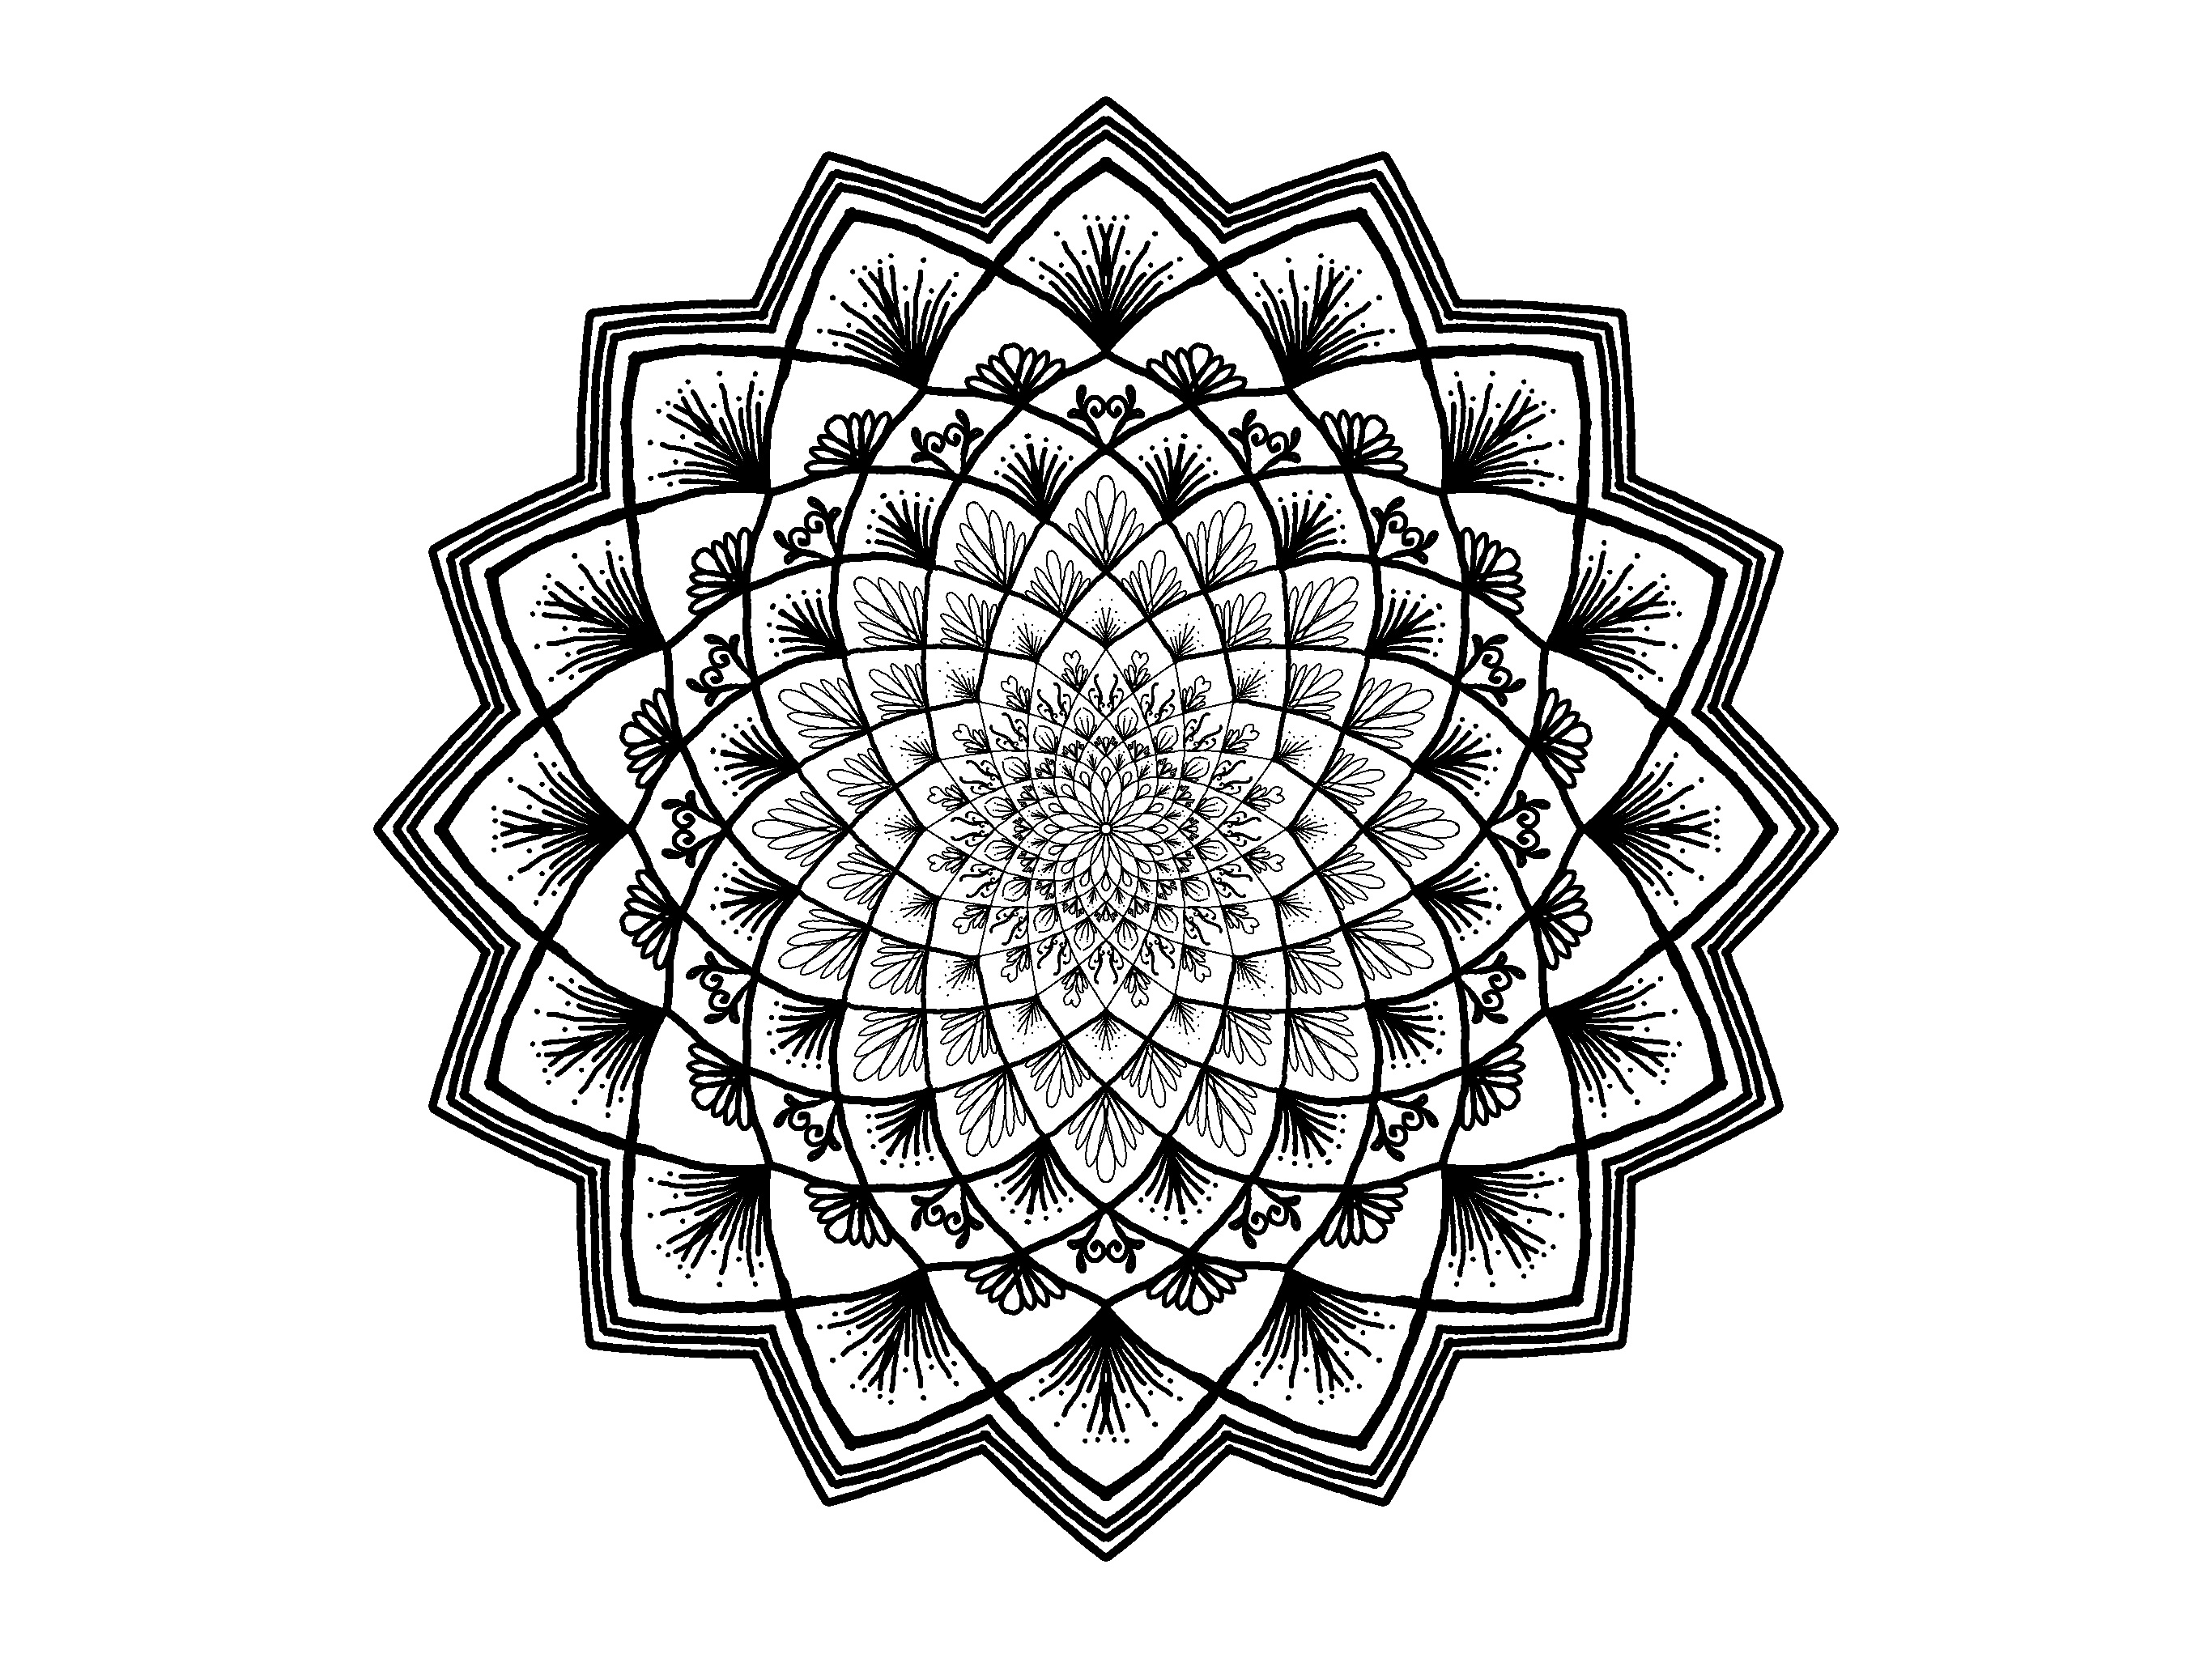 Zendala pattern free image download